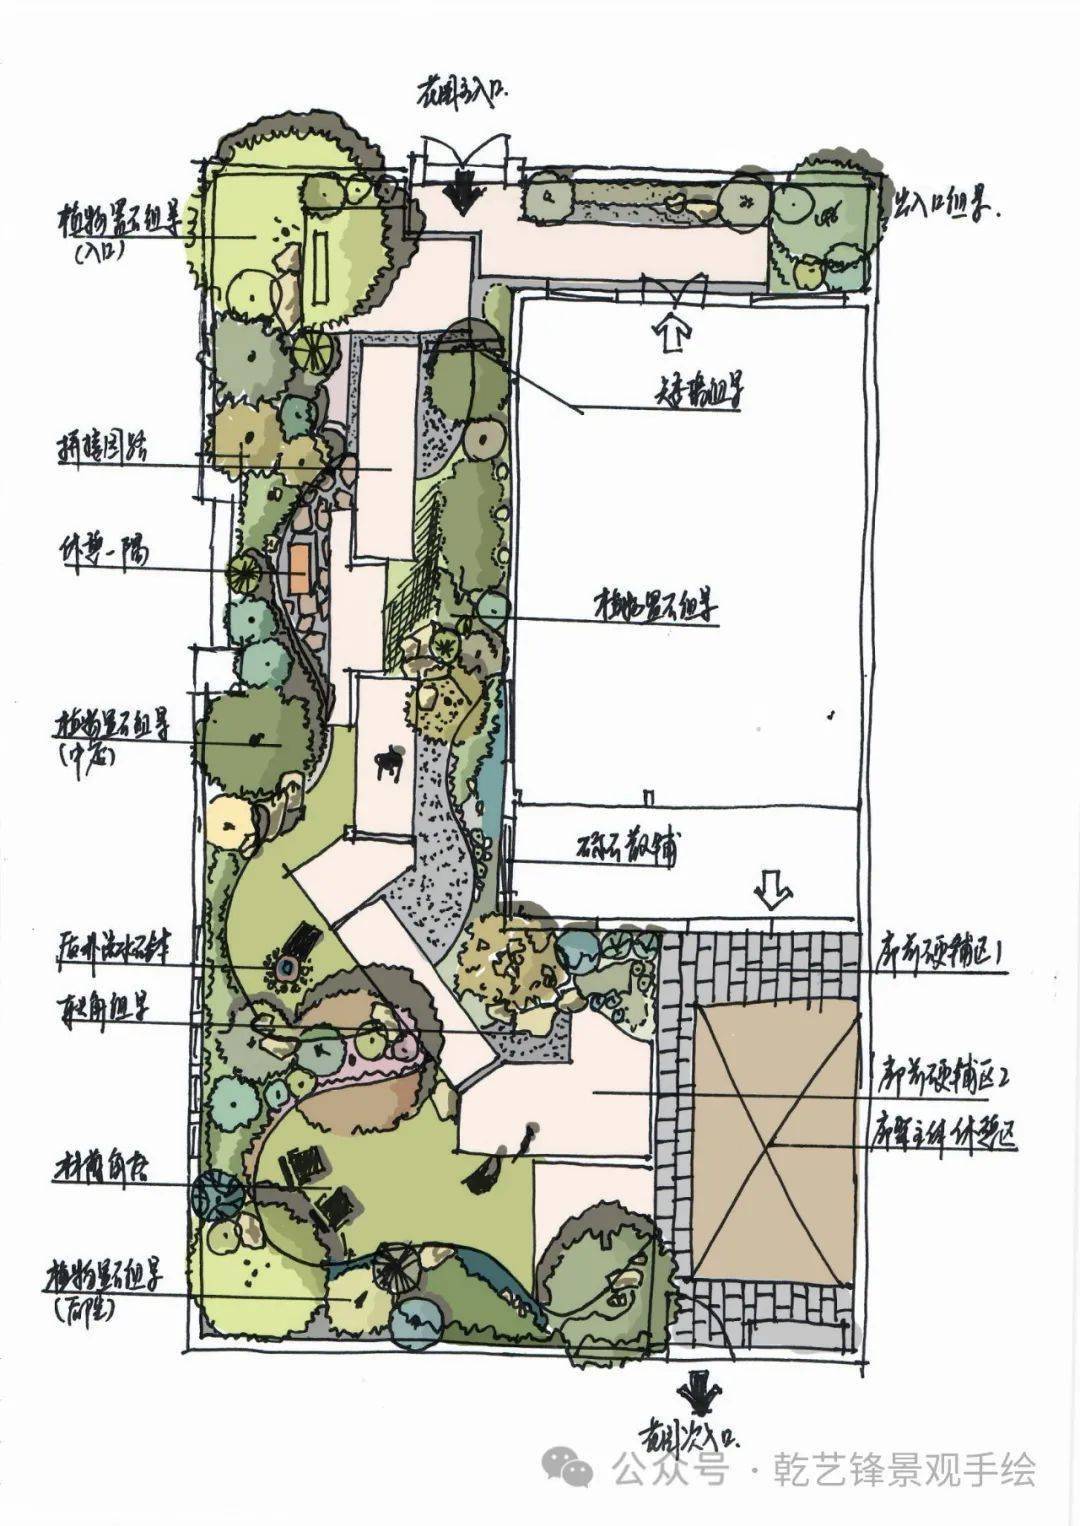 教你如何打造自己的花园艺锋庭院花园平面构思设计课3月25日开课仅剩